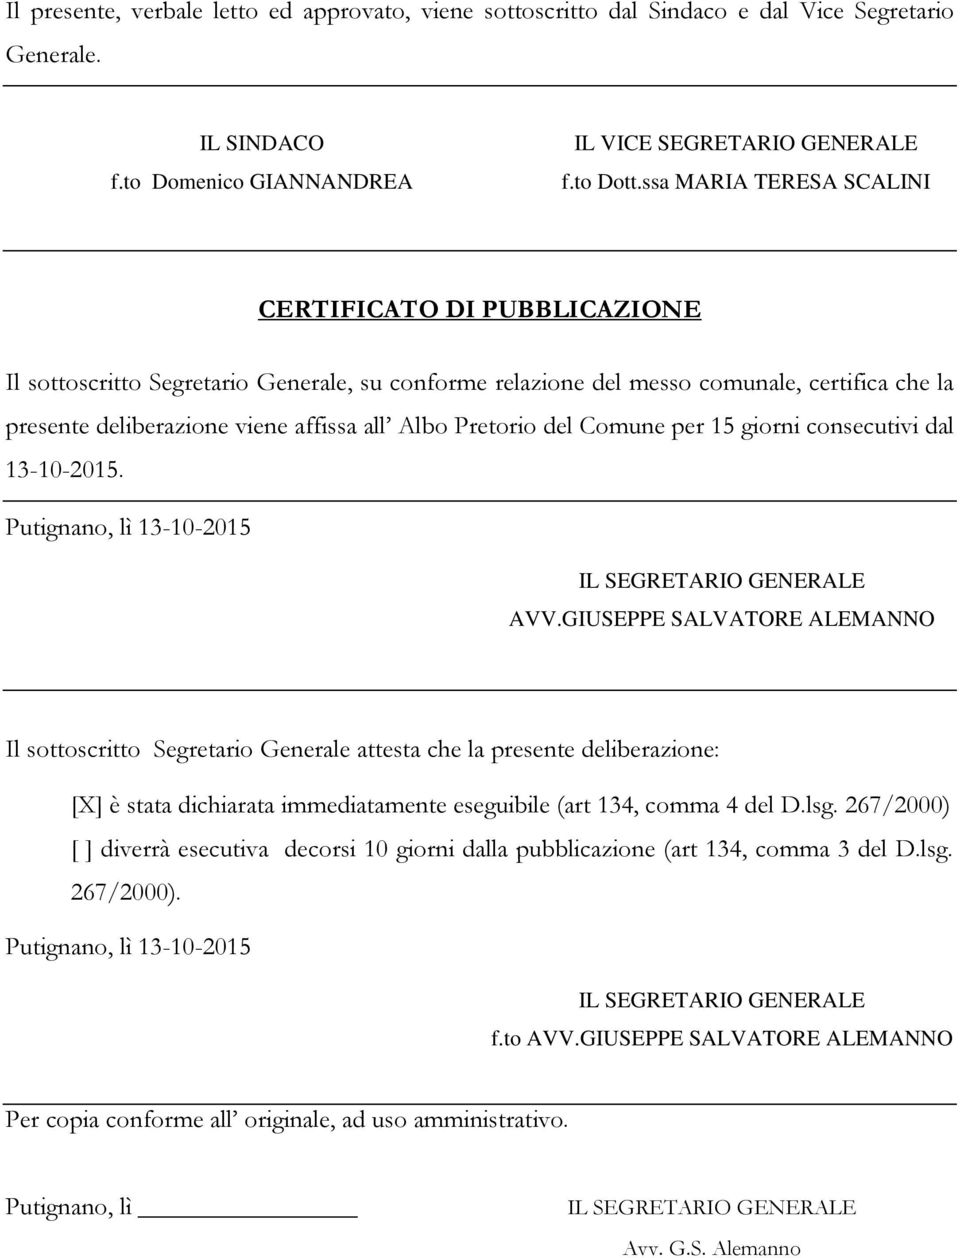 Pretorio del Comune per 15 giorni consecutivi dal 13-10-2015. Putignano, lì 13-10-2015 AVV.